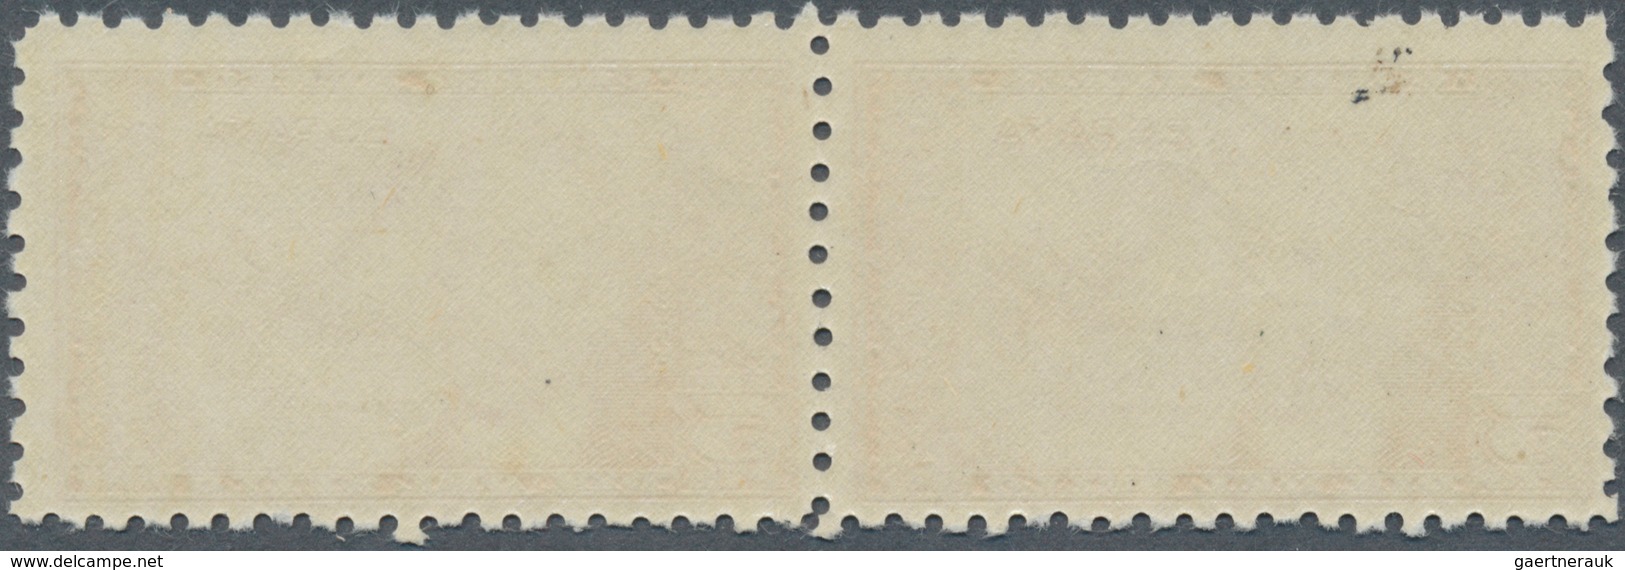 Spanien: 1944, Airmail Stamp 5pts. "Dr.Thebussem", Color Variety "orange", Horiz. Pair, Unmounted Mi - Gebraucht